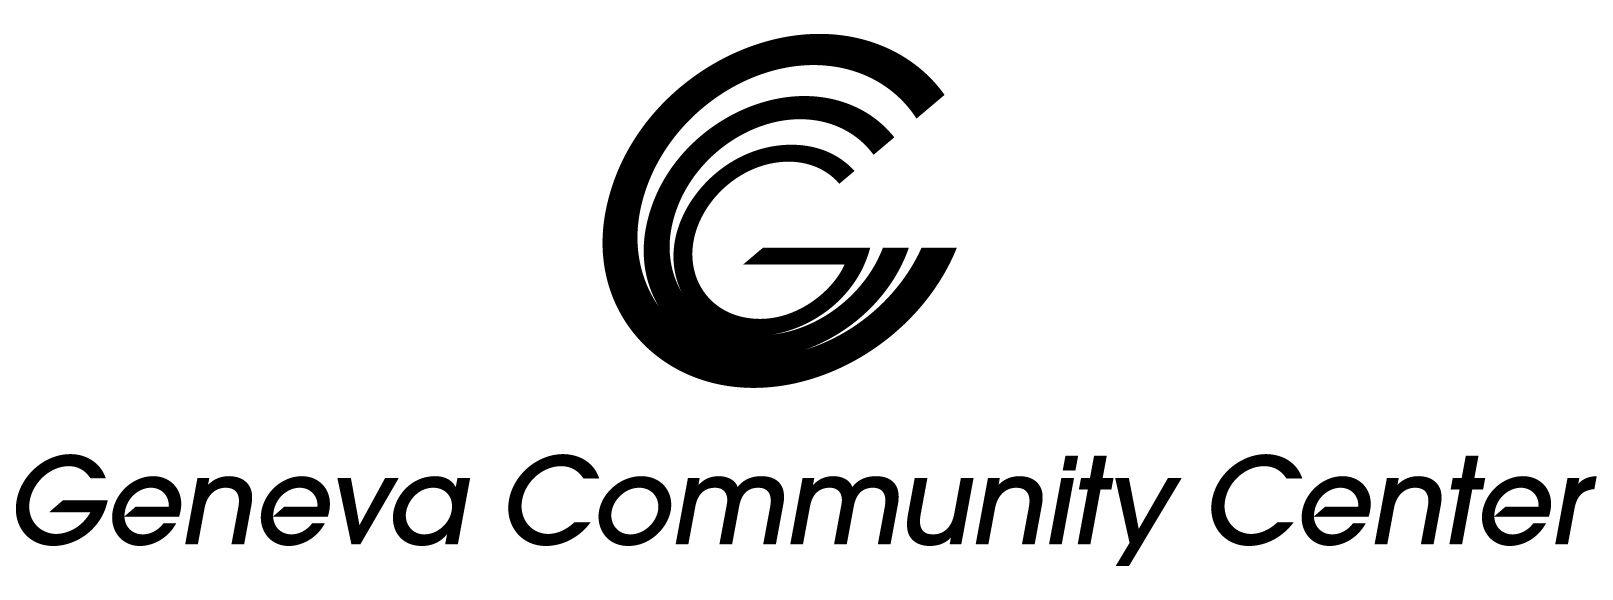 White Center Logo - Logo Download. Geneva Community Center